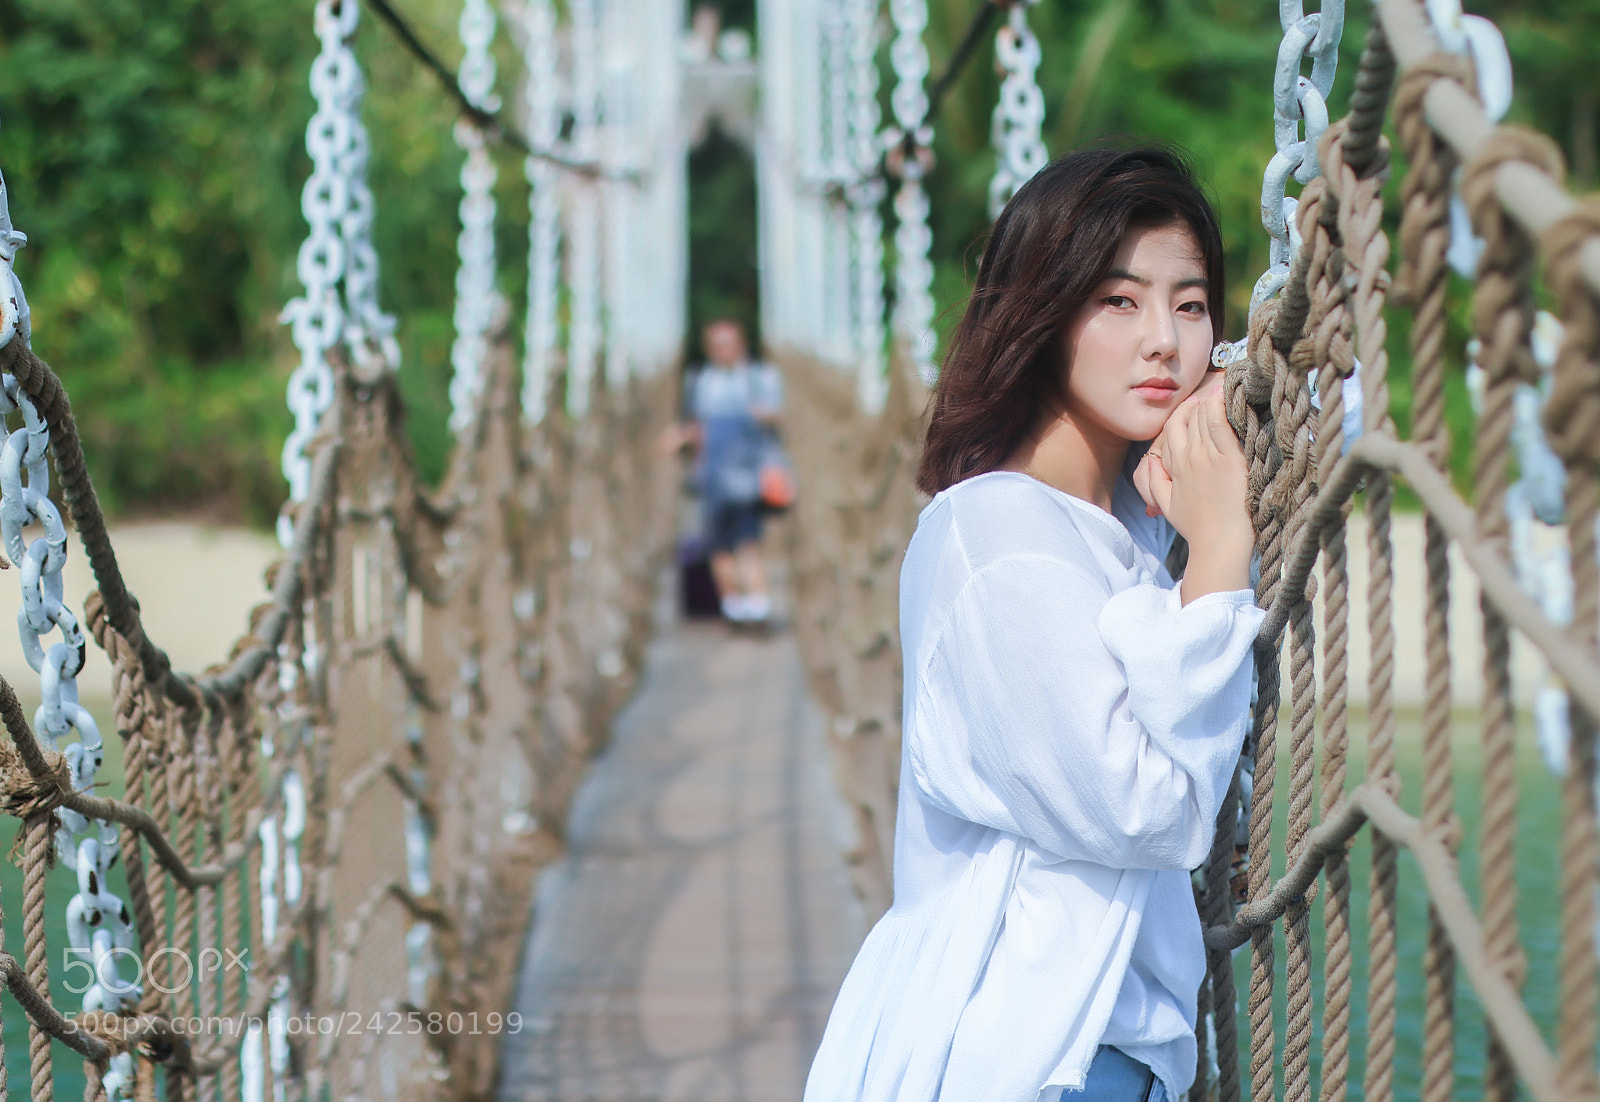 Canon EOS M5 sample photo. Korean girl photography